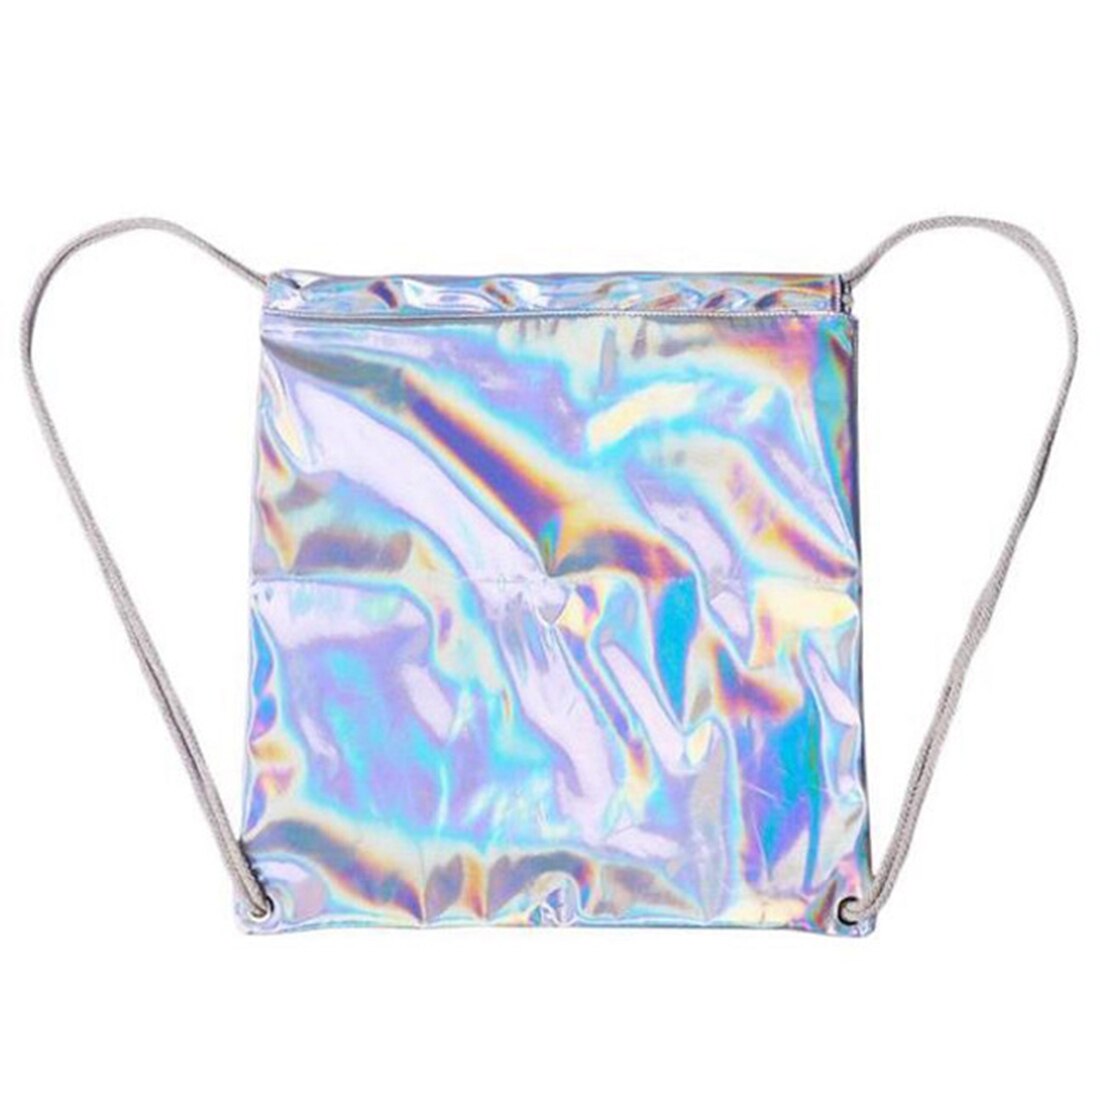 Fashion popular gradient laser shoulder bag irregular solid color glare DrawString shoulder bag fashion casual backpack - ebowsos